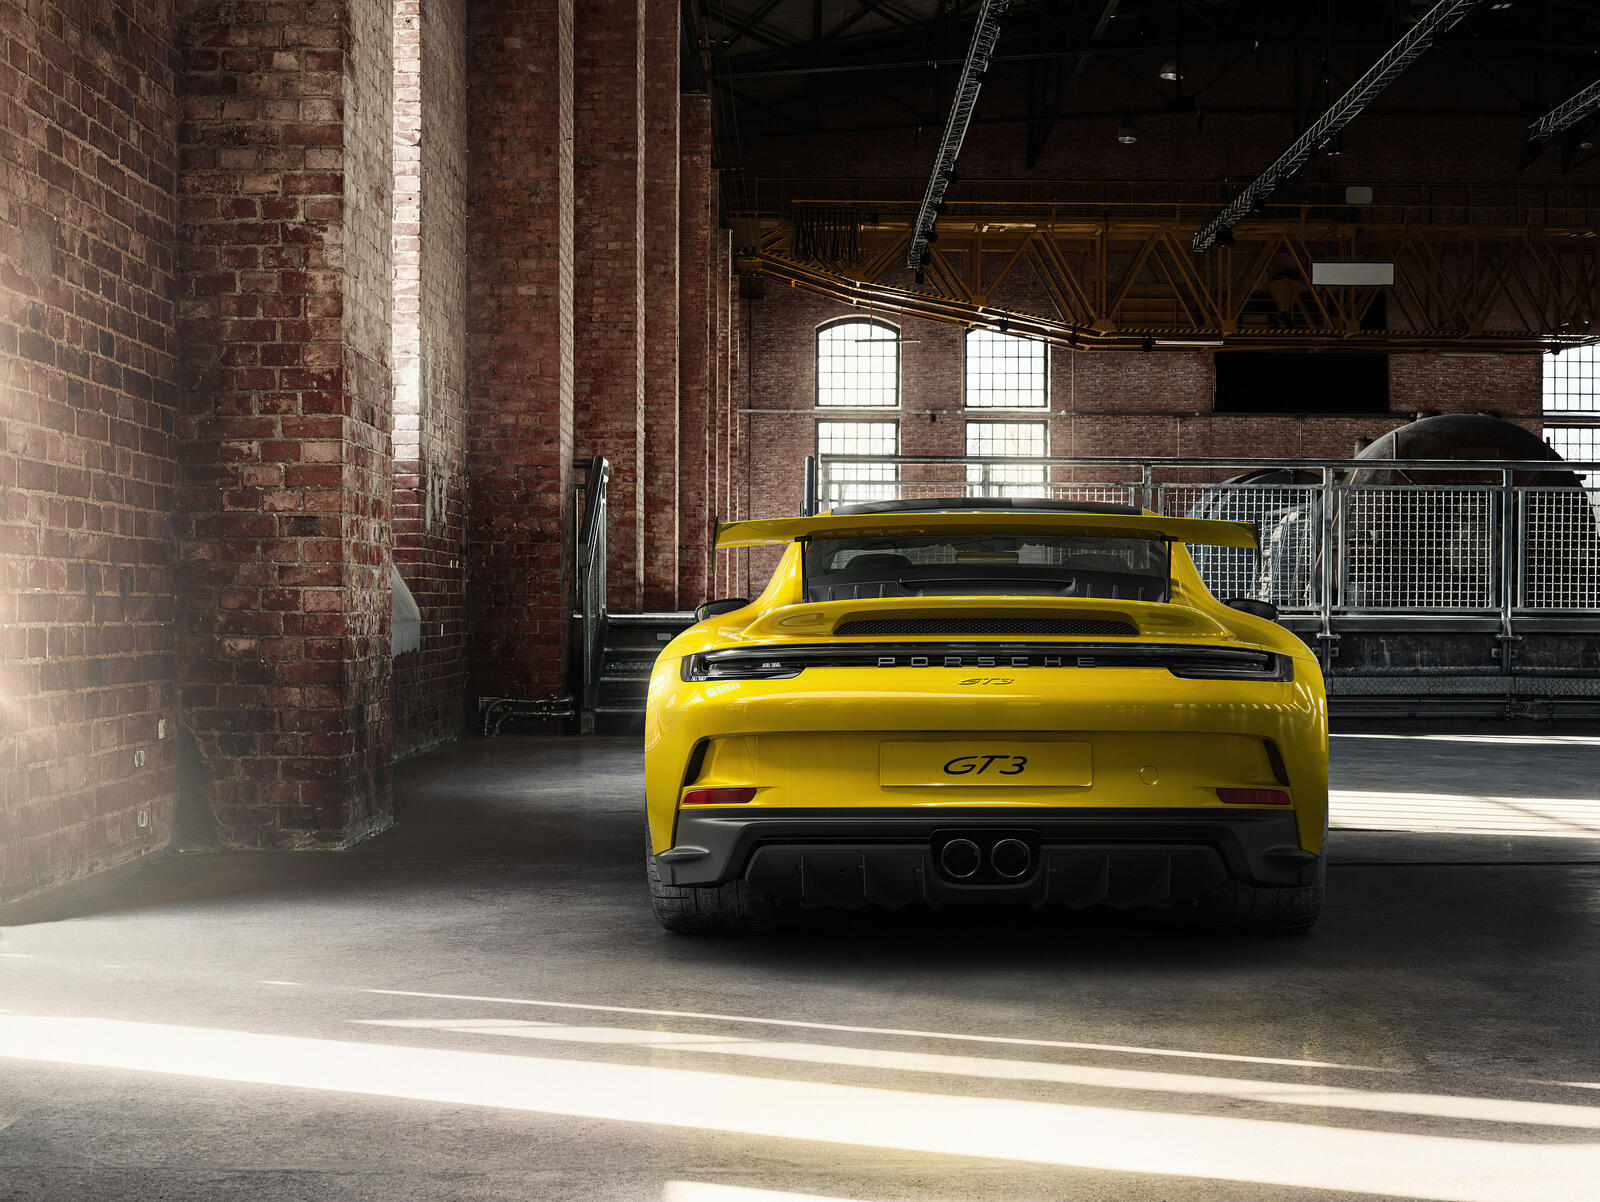 Бесплатное фото Желтый Porsche 911 сфотографированный сзади в ангаре из красного кирпича